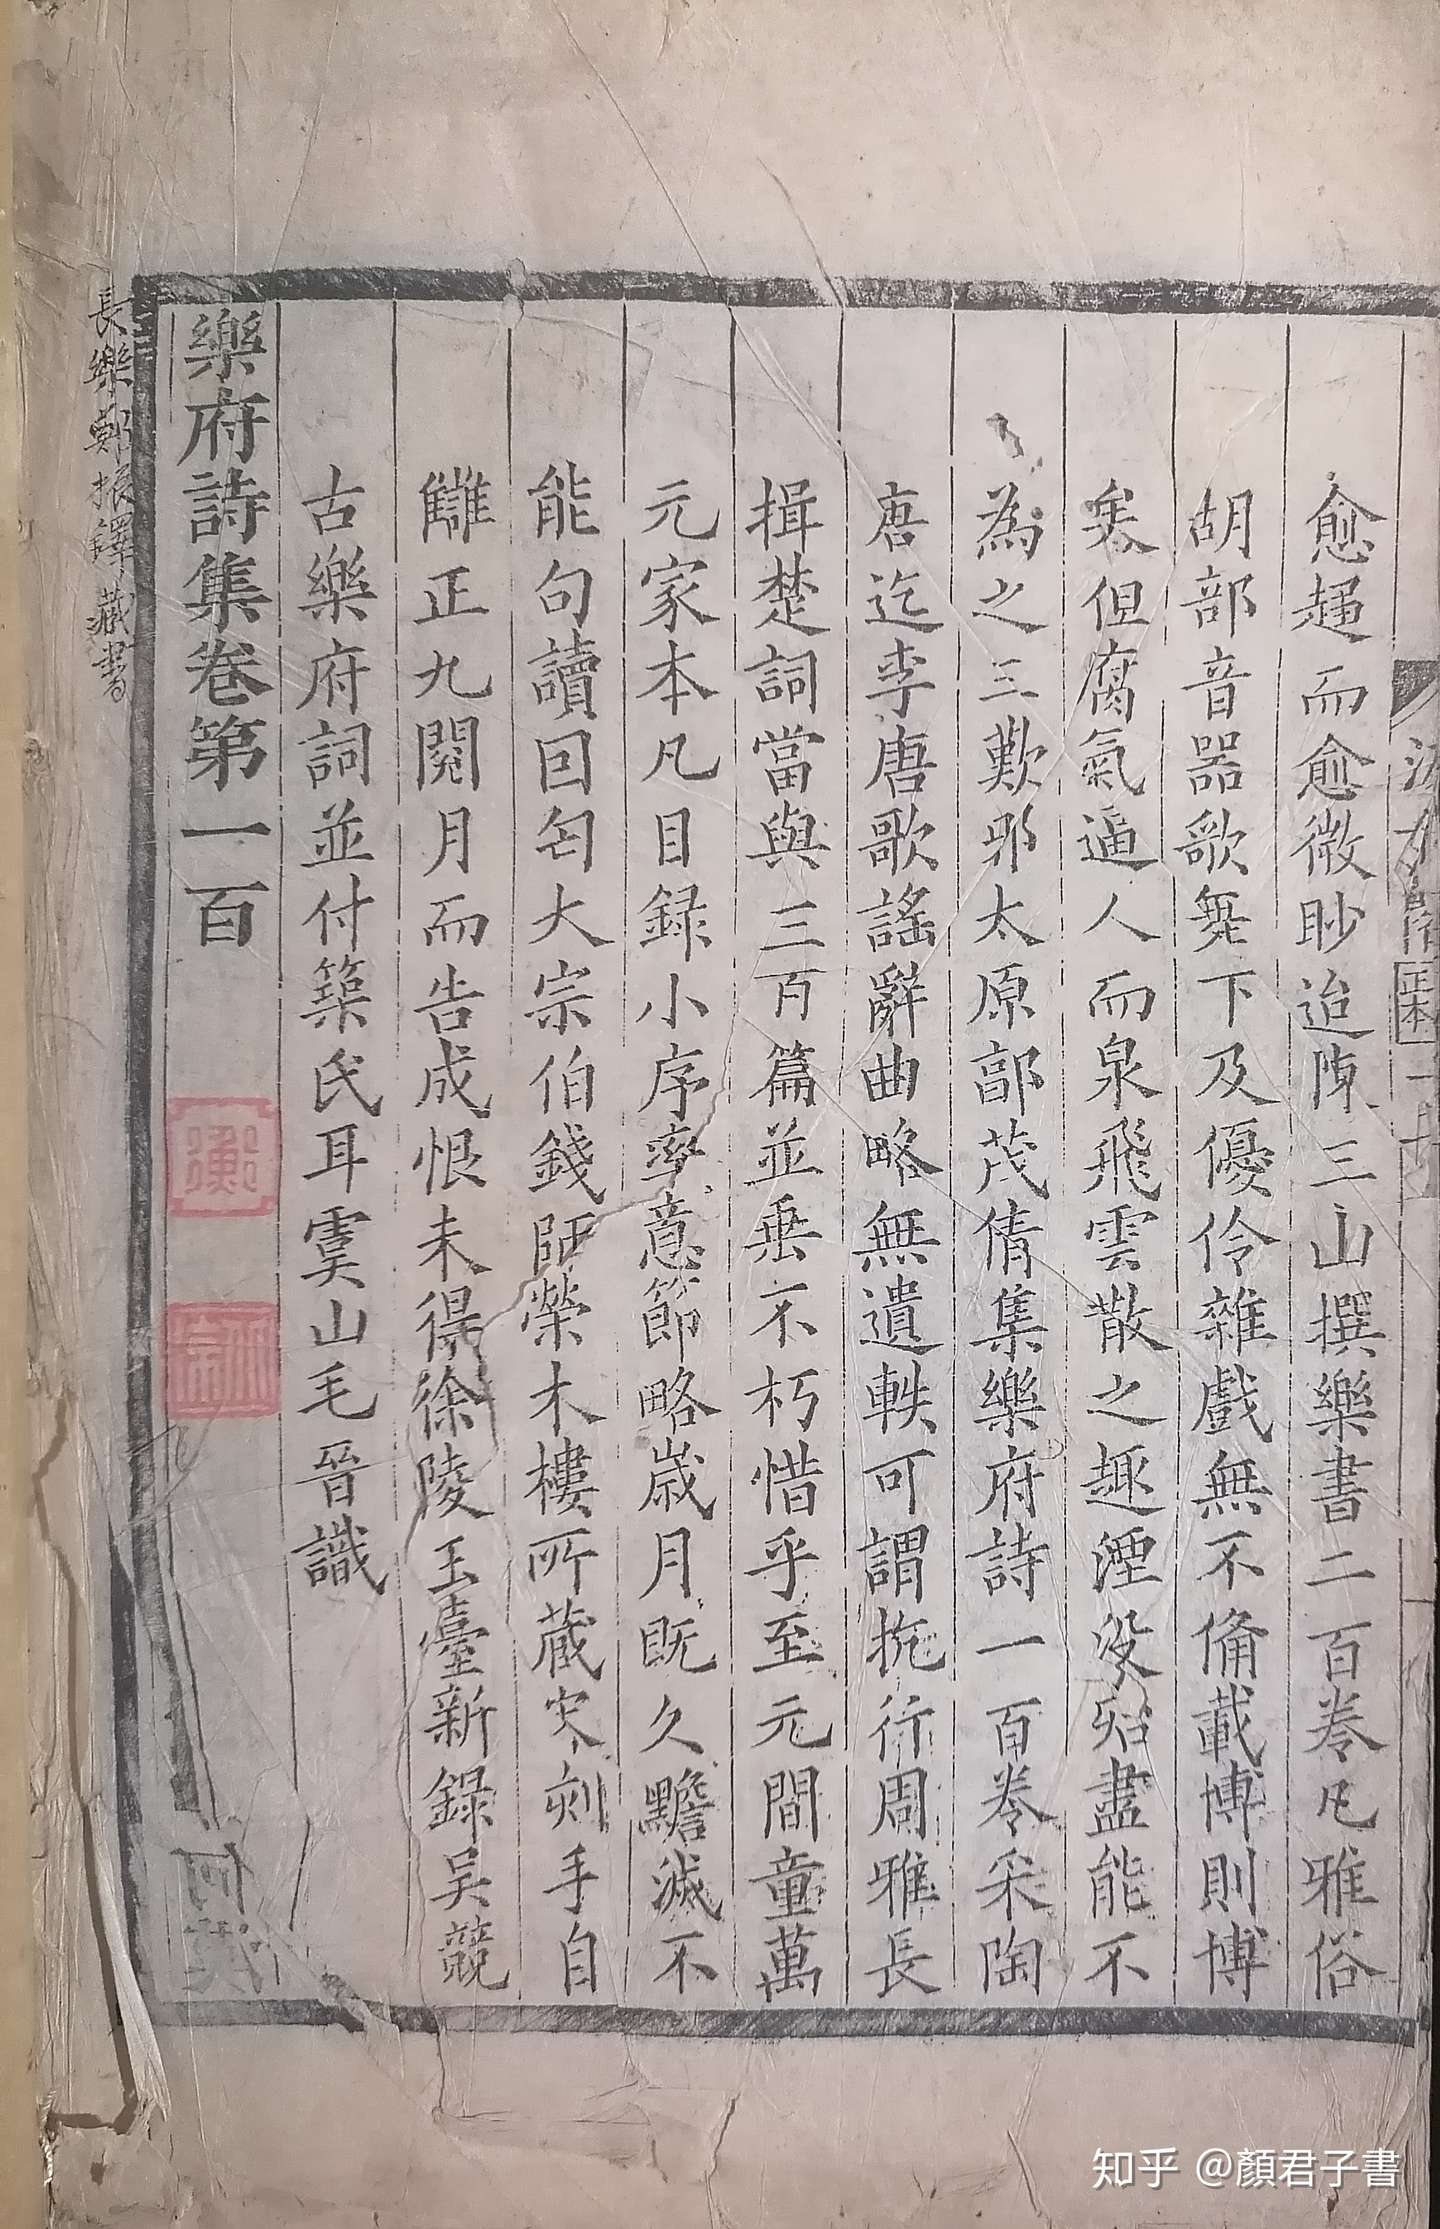 1.2再觀重慶市藏國家珍貴古籍特展- 知乎